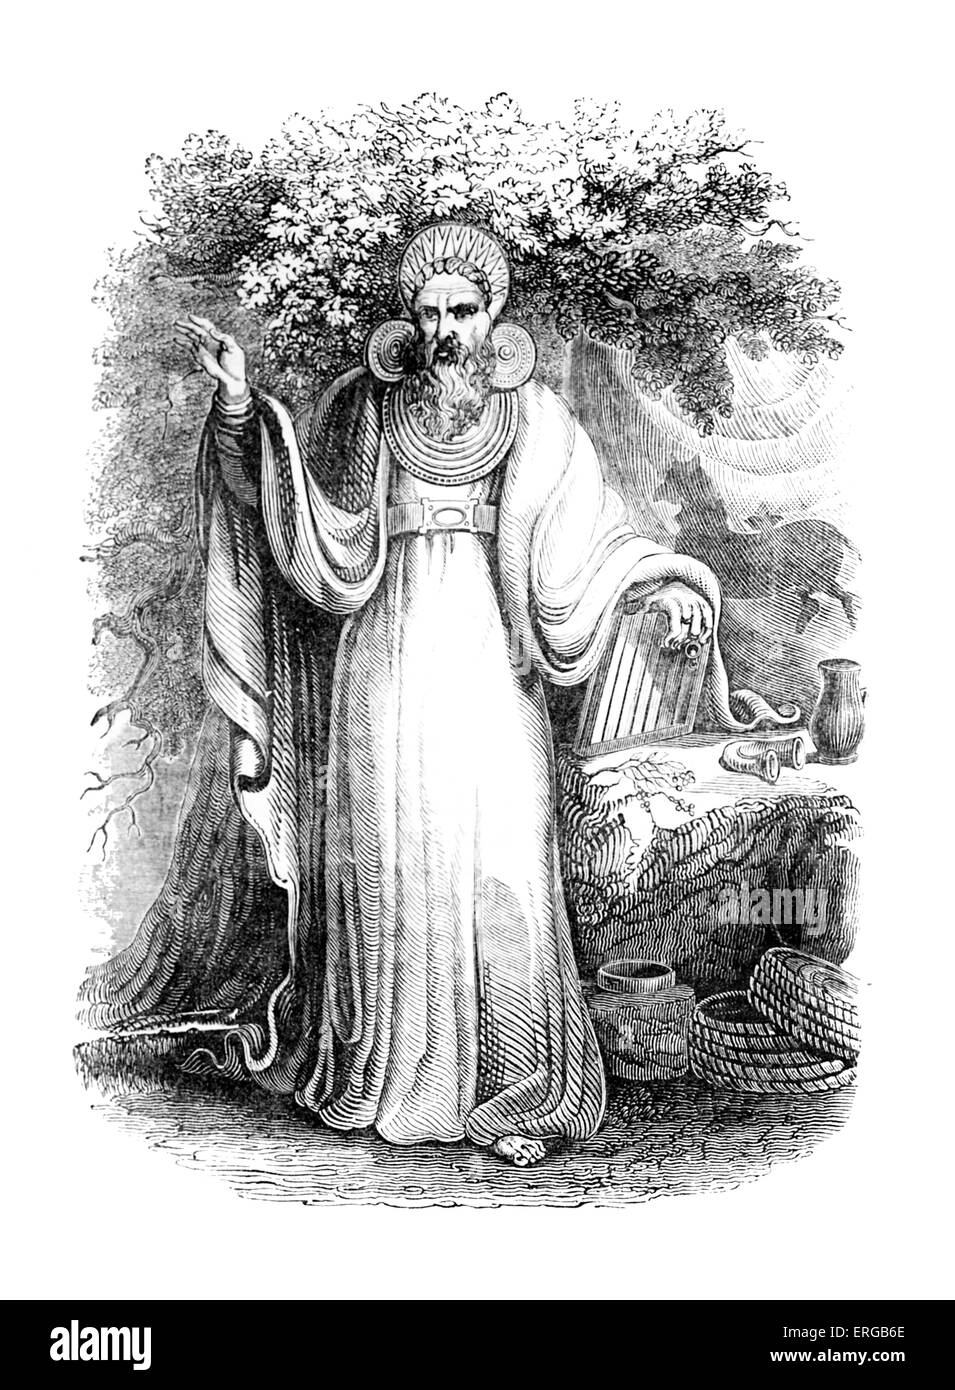 Bogen-Druide in seinem vollen gerichtlichen Kostüm. Ein Druide war Mitglied der Priesterklasse in Gallien, Britannien und Irland während der Stockfoto